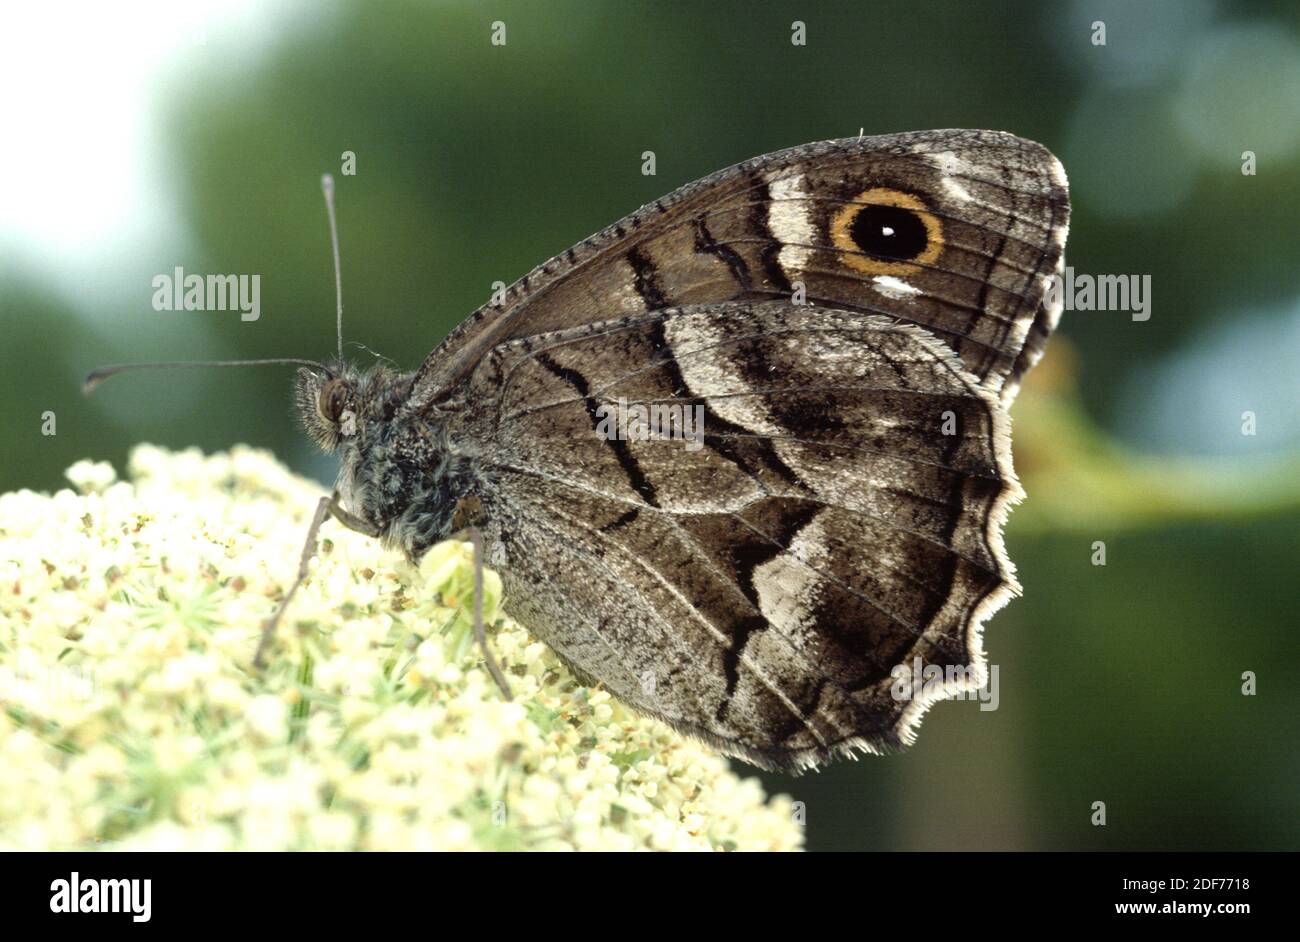 L'ombre rayée (Hipparchia fidia ou Pseudotergumia fidia) est un papillon originaire du bassin méditerranéen occidental. Adulte. Banque D'Images